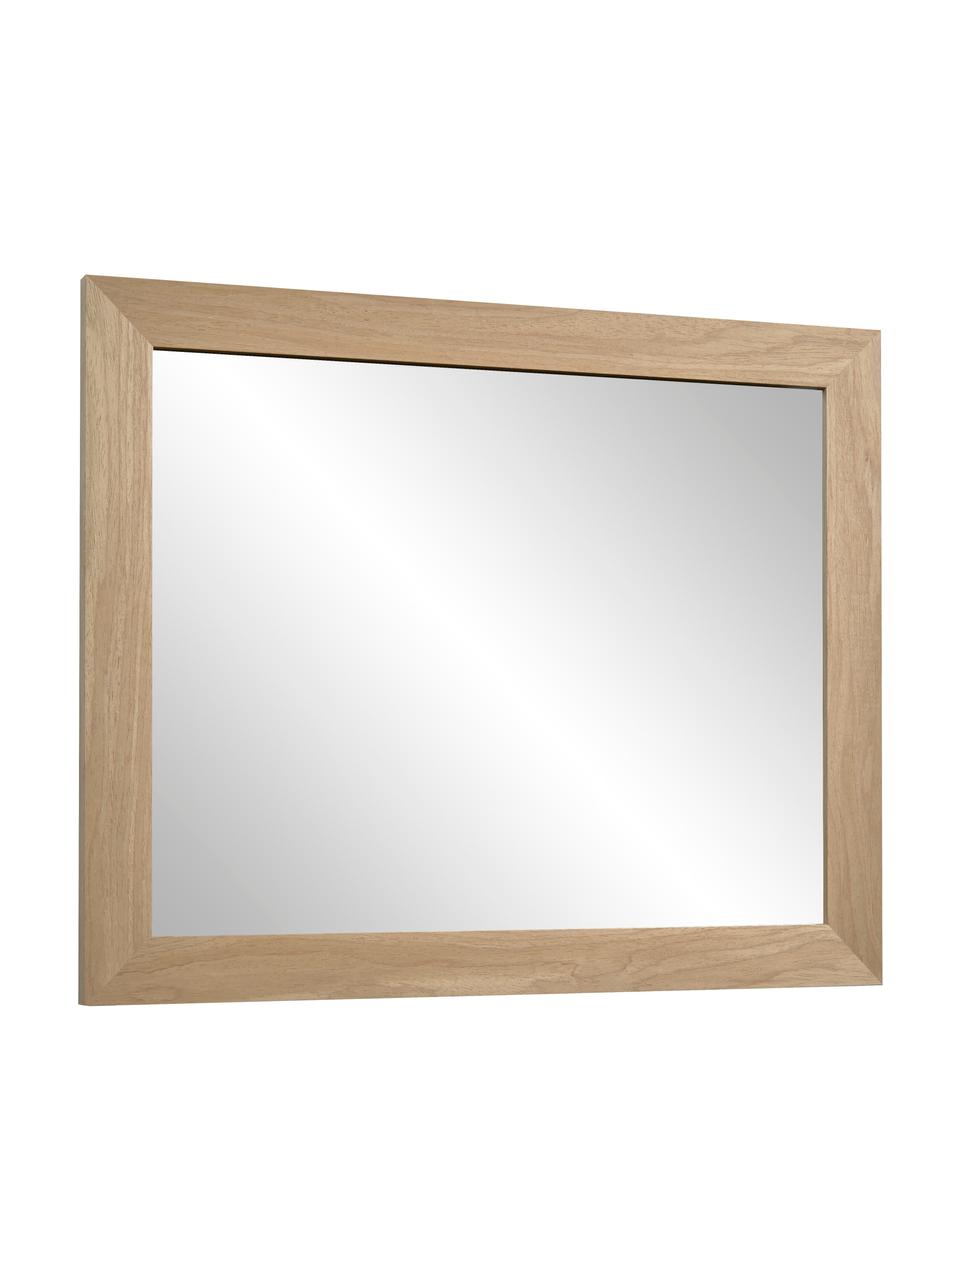 Specchio da parete con cornice in legno Wilany, Cornice: legno, Superficie dello specchio: lastra di vetro, Beige, Larg. 47 x Alt. 58 cm